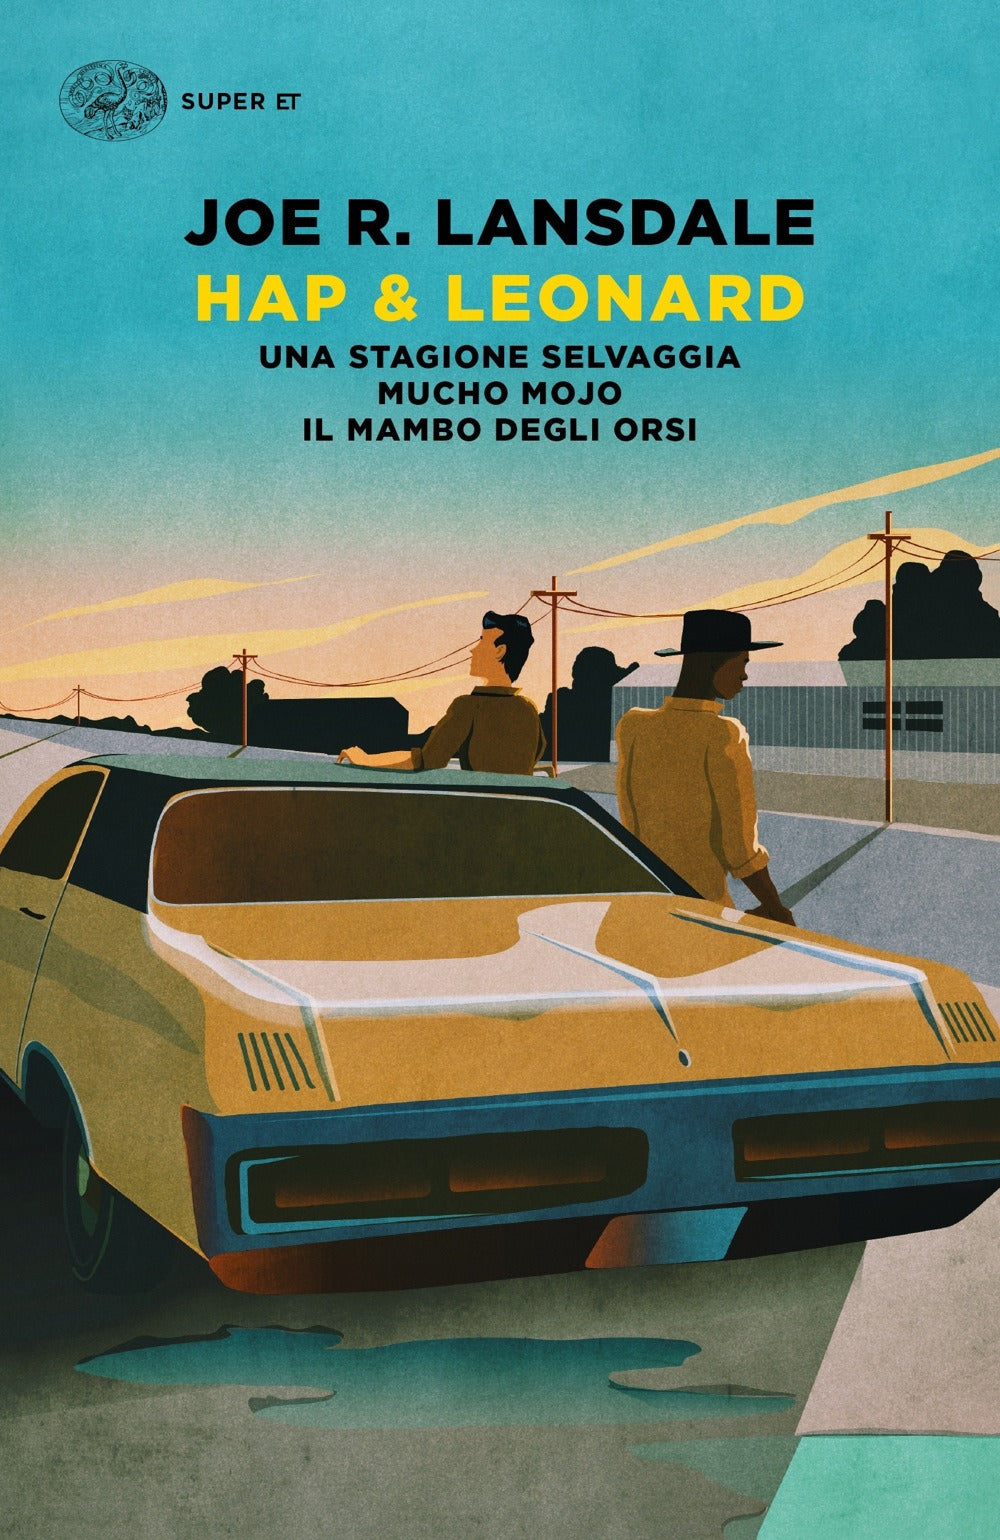 Hap & Leonard: Una stagione selvaggia-Mucho Mojo-Il mambo degli orsi.